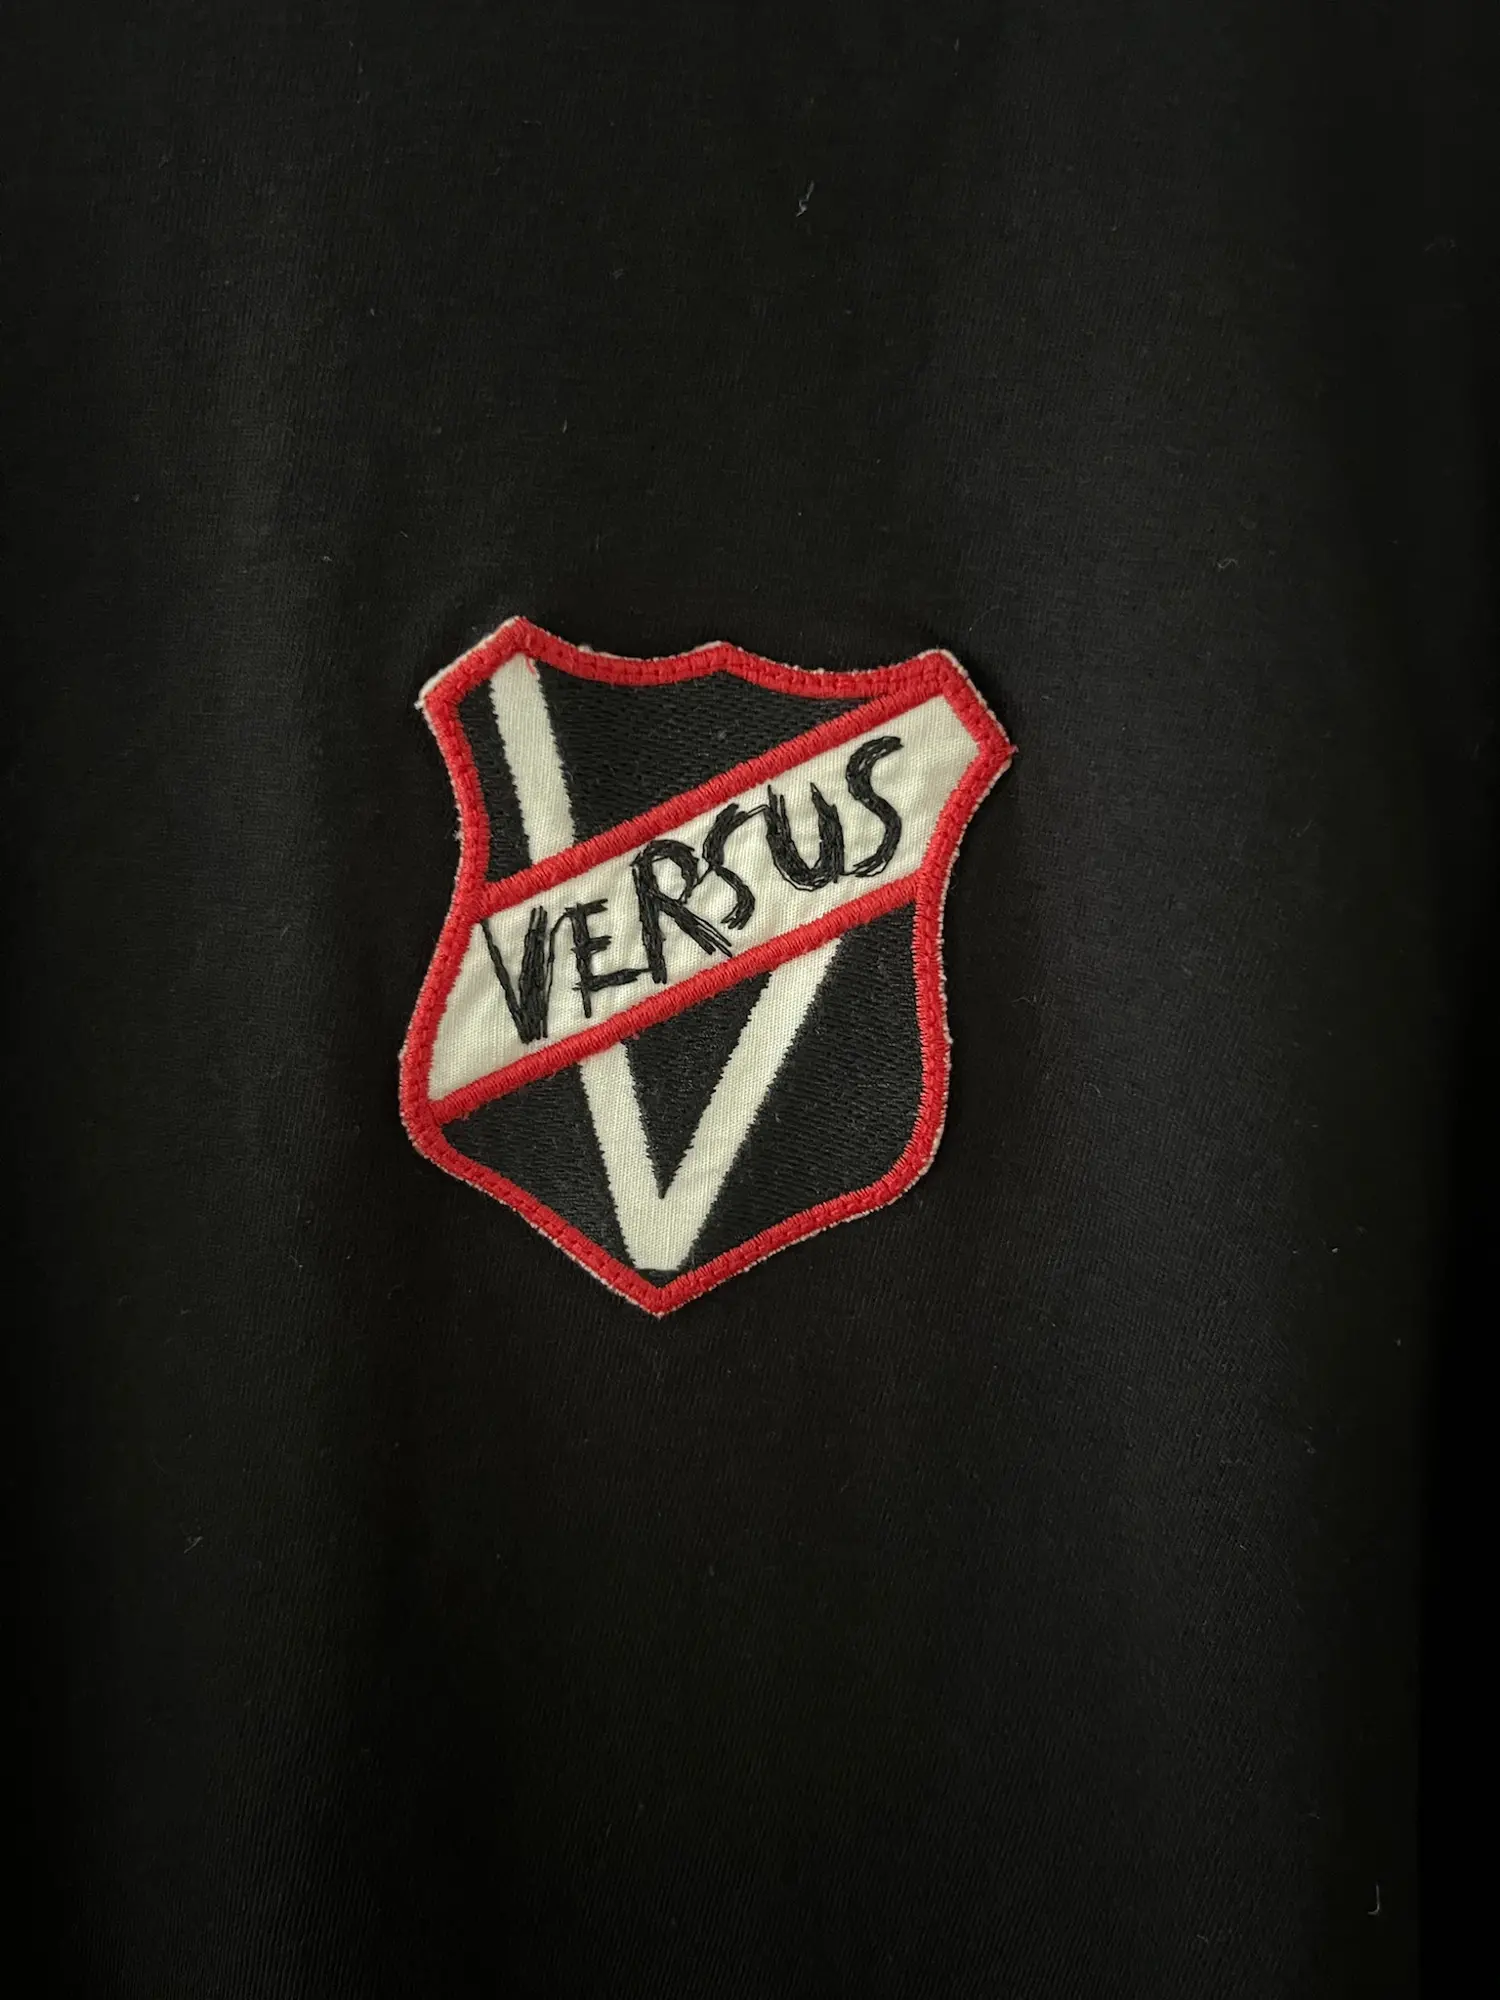 Versus Versace t-shirt